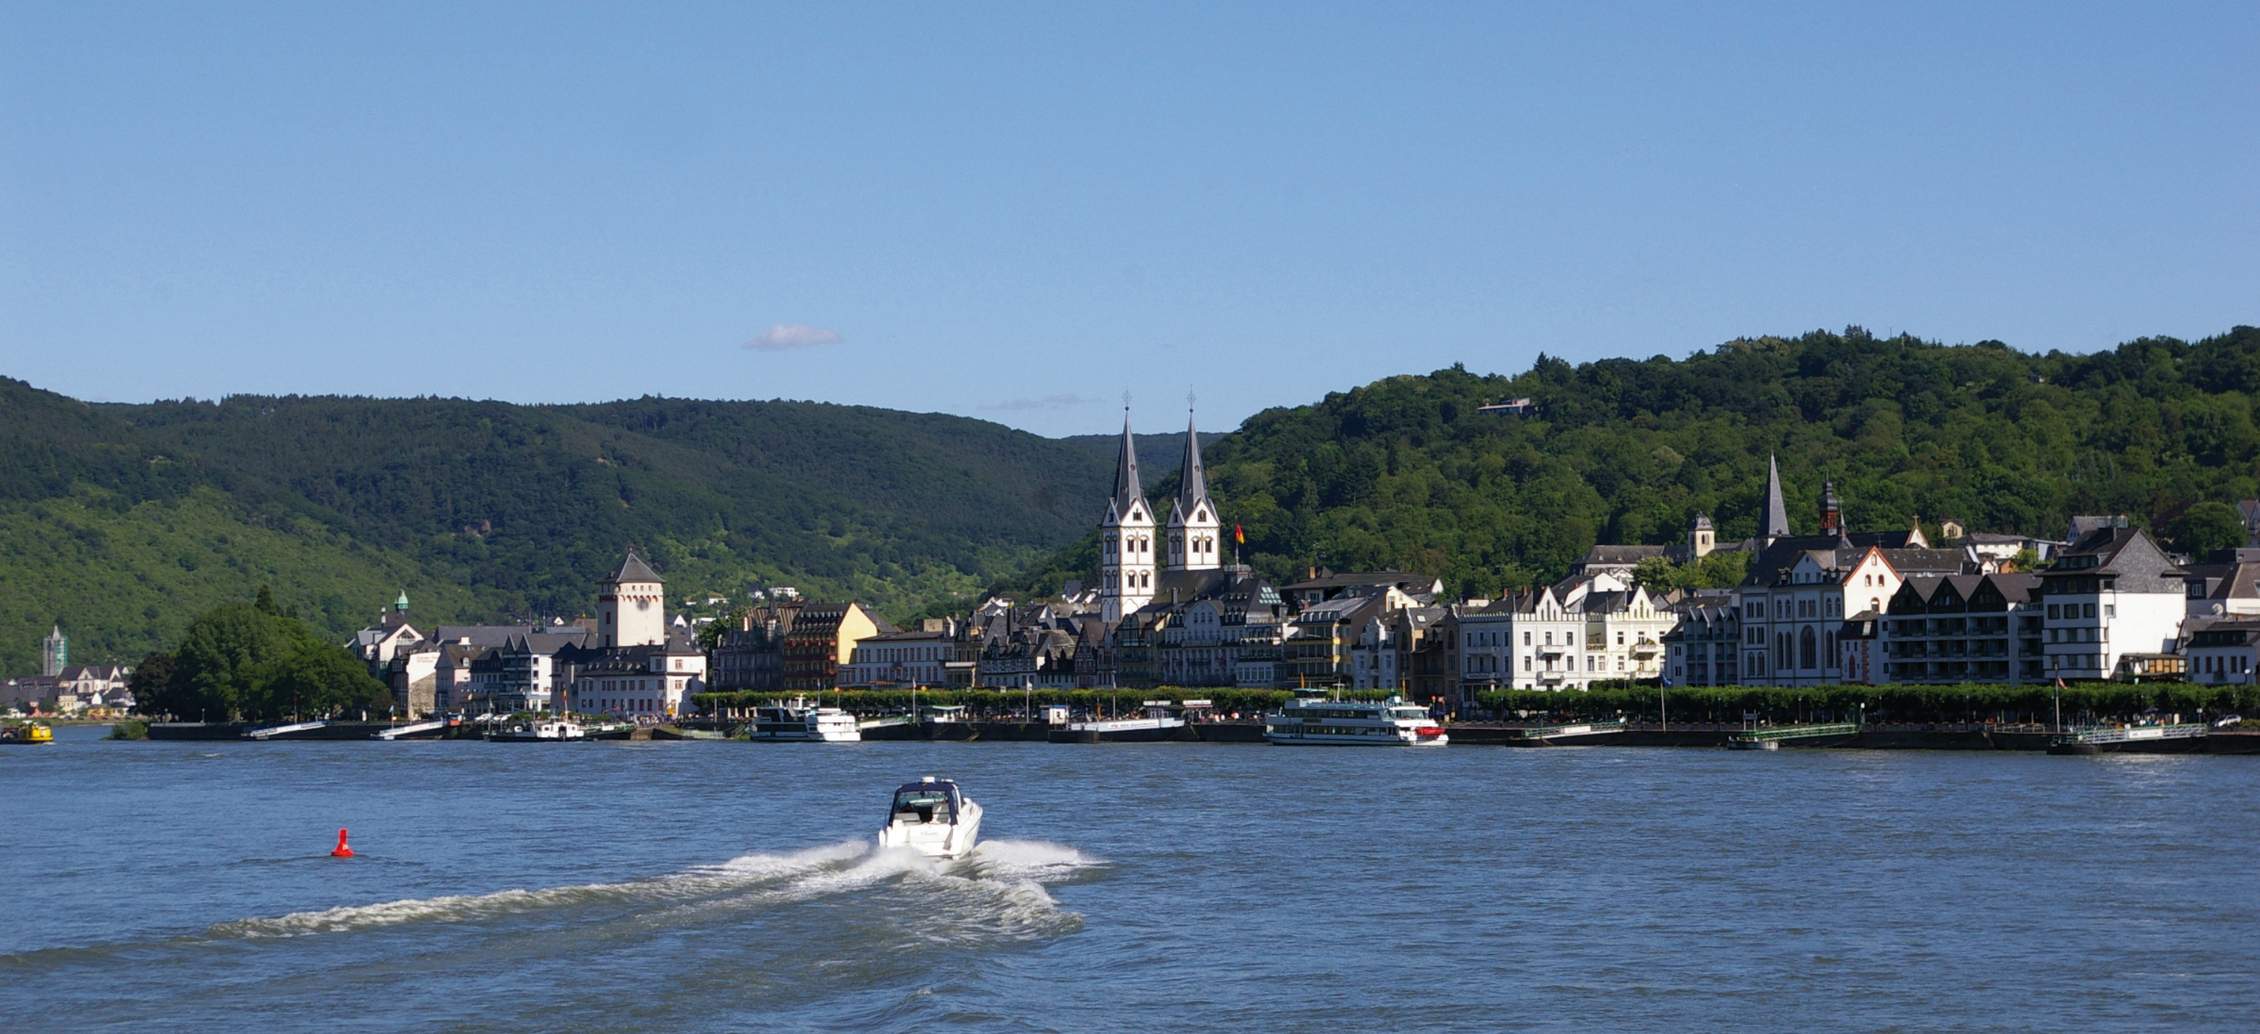 Boppard, die Perle am Rhein & in Weinregion Mittelrhein